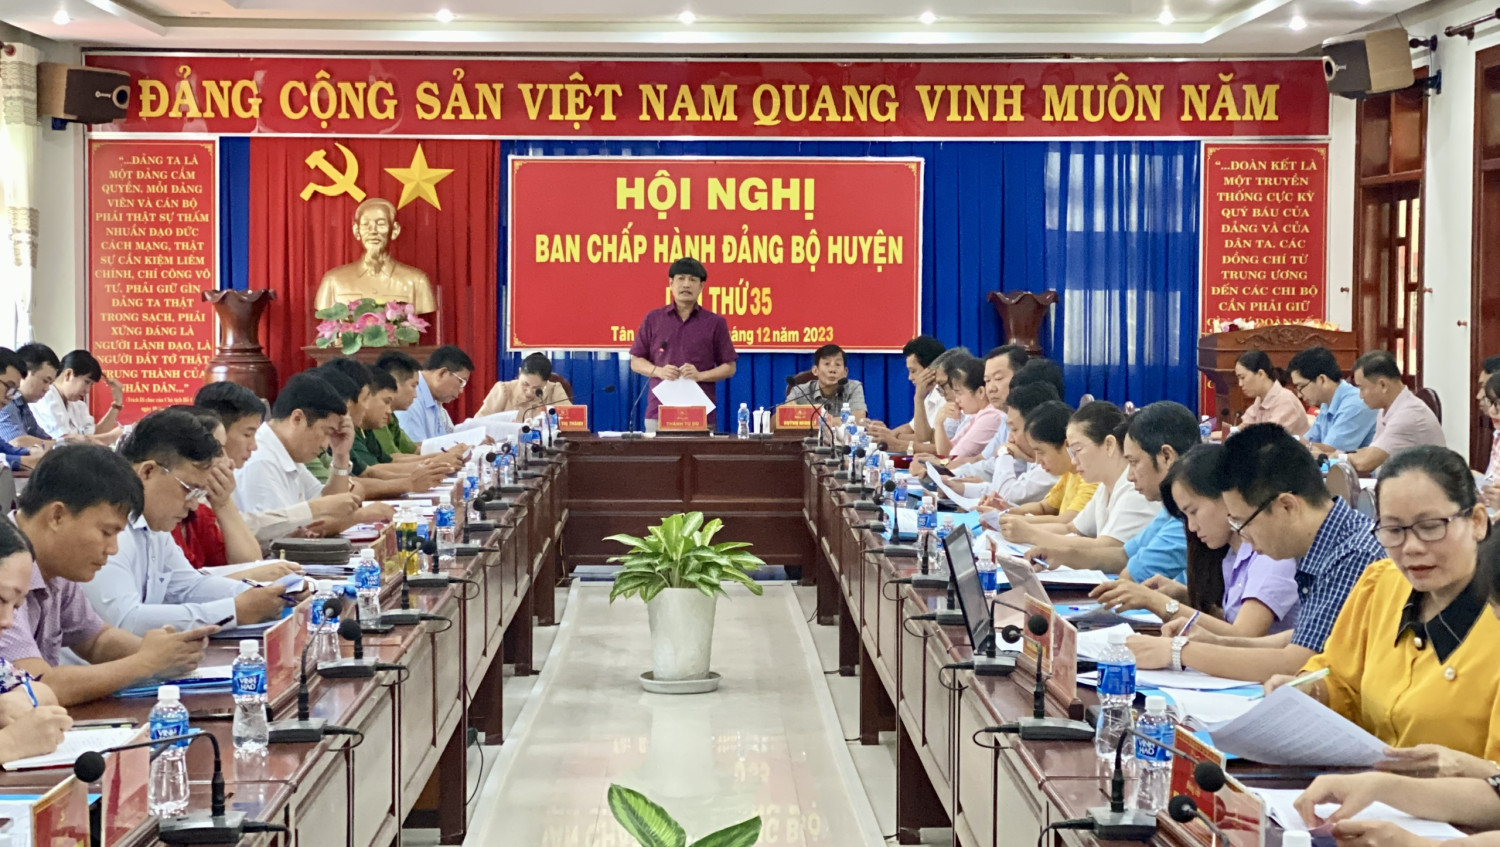 Tân Biên Ban chấp hành đảng bộ huyện tổ chức kỳ họp lần thứ 35